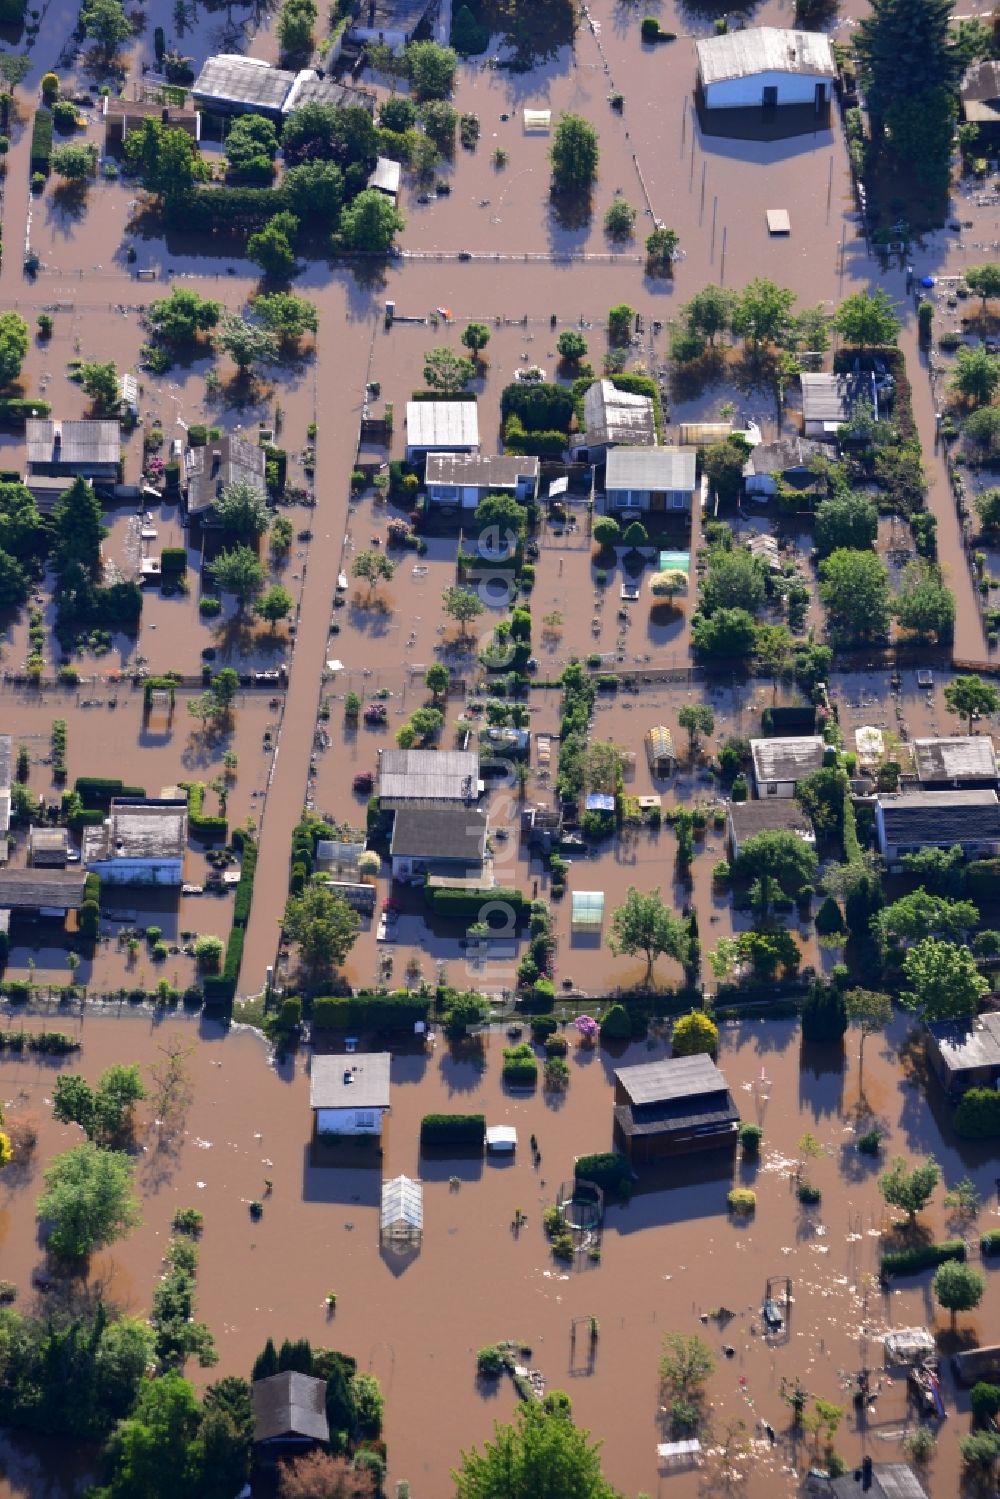 Dessau-Roßlau von oben - Hochwasser Pegel - Situation durch Überschwemmung und Übertritt der Ufer der Elbe bei Dessau-Roßlau im Bundesland Sachsen-Anhalt